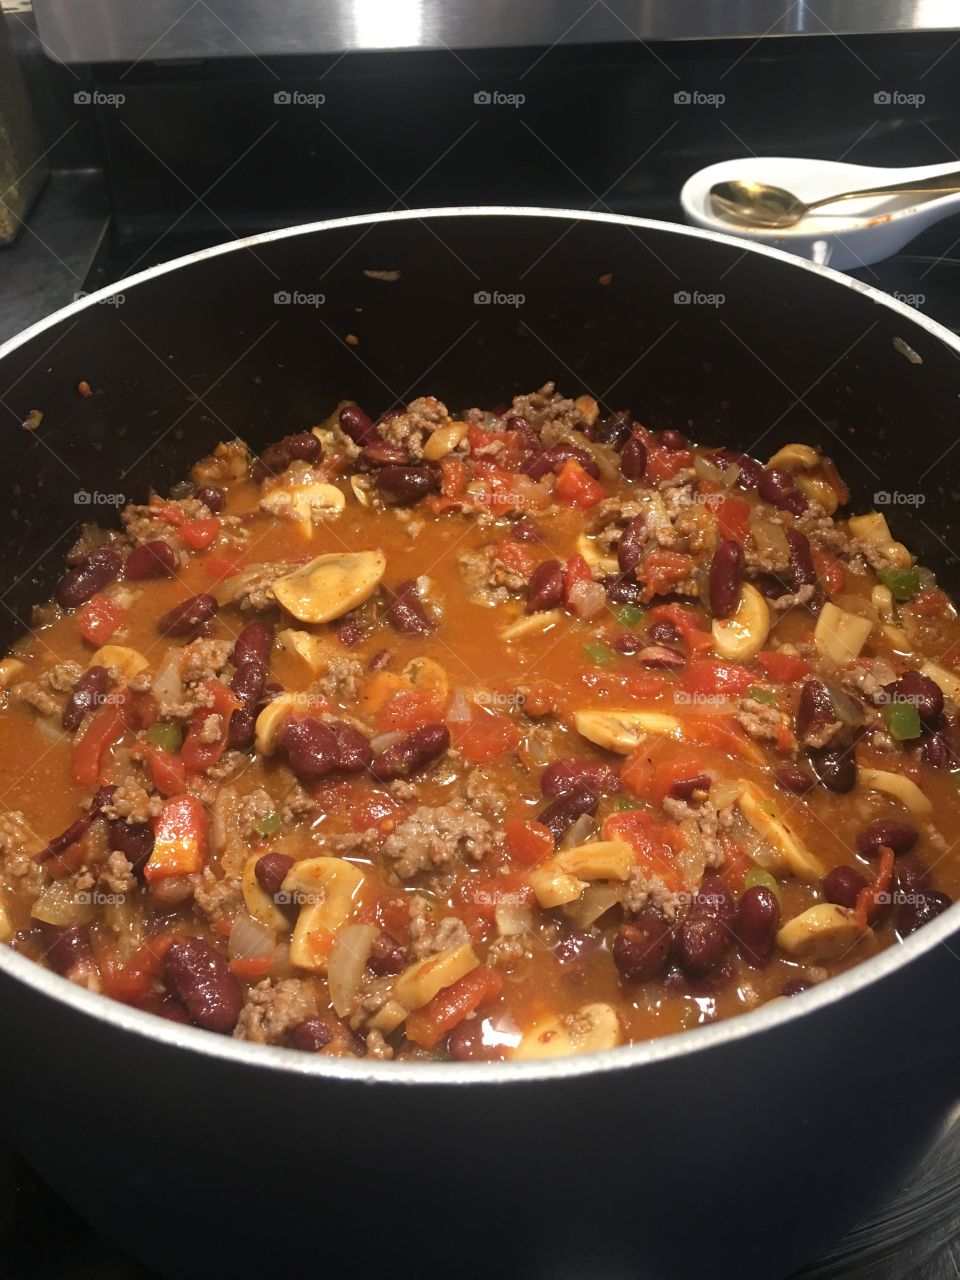 Pot of homemade chili